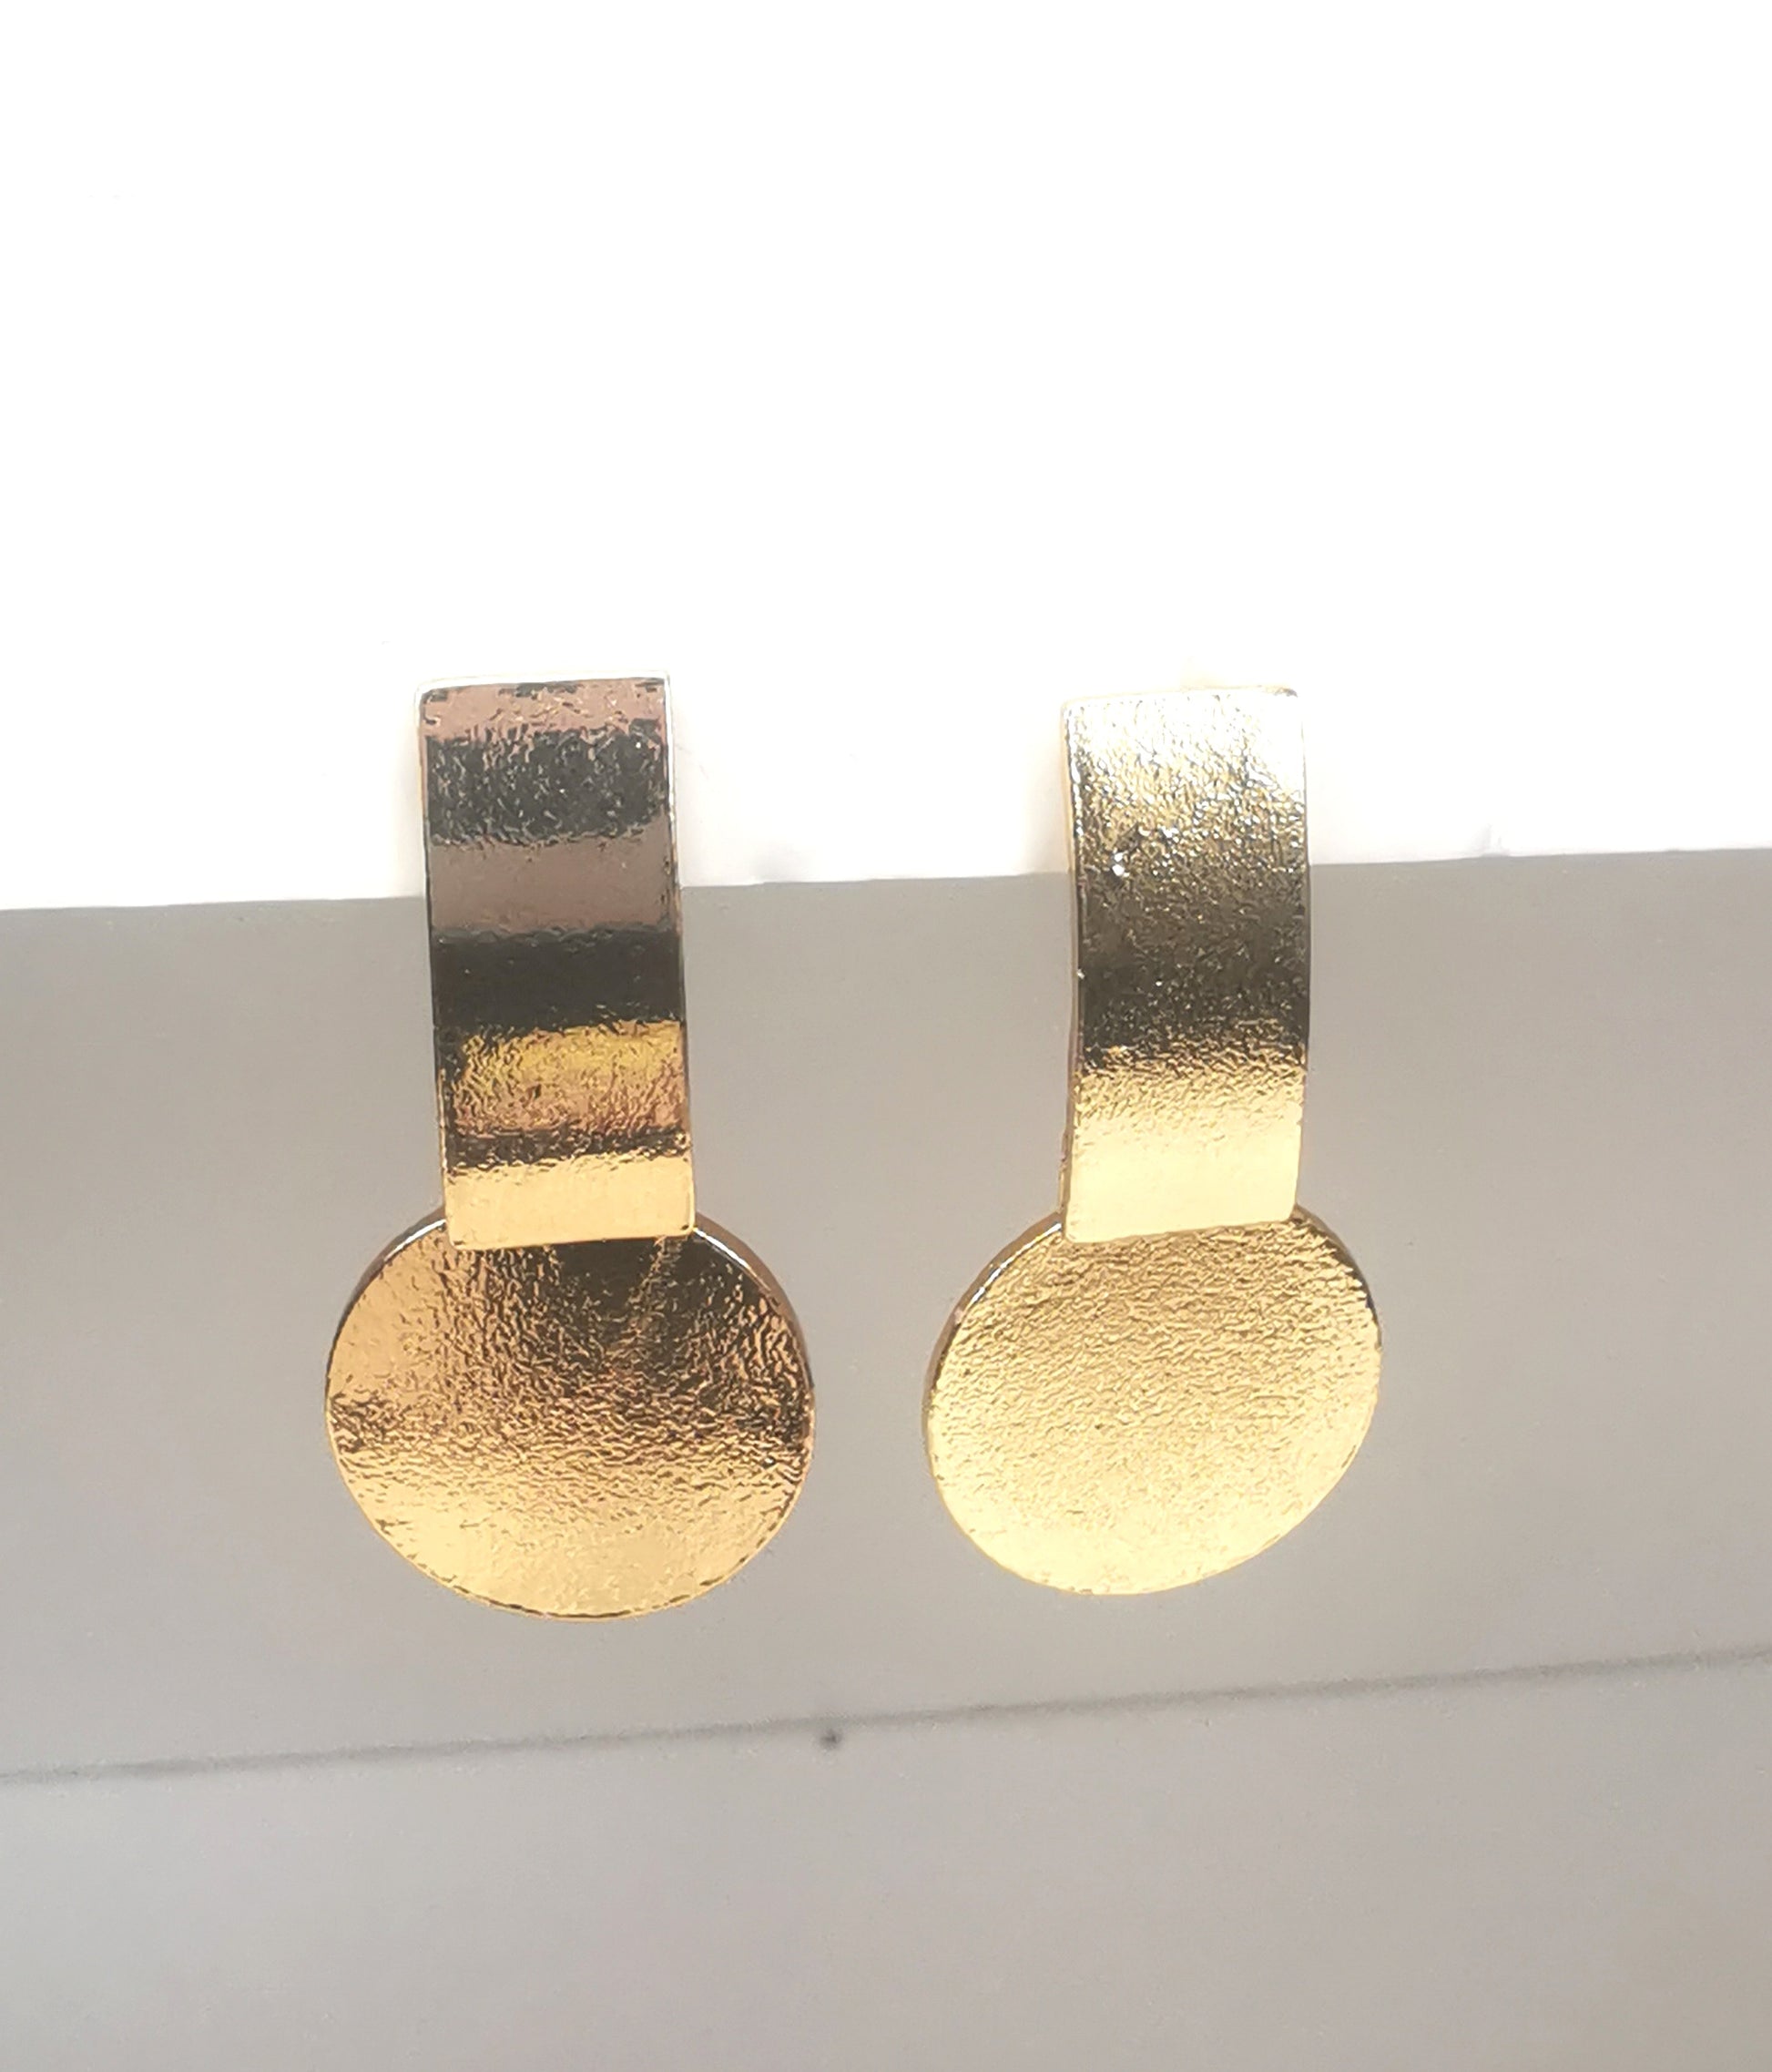 Boucles d'oreilles sur clous en métal doré. Un premier rectangle vertical est fixé au clou. En dessus est suspendu un disque. Le tout est texturé. Présentées cote à cote, accrochées sous un support blanc. Vue de face.